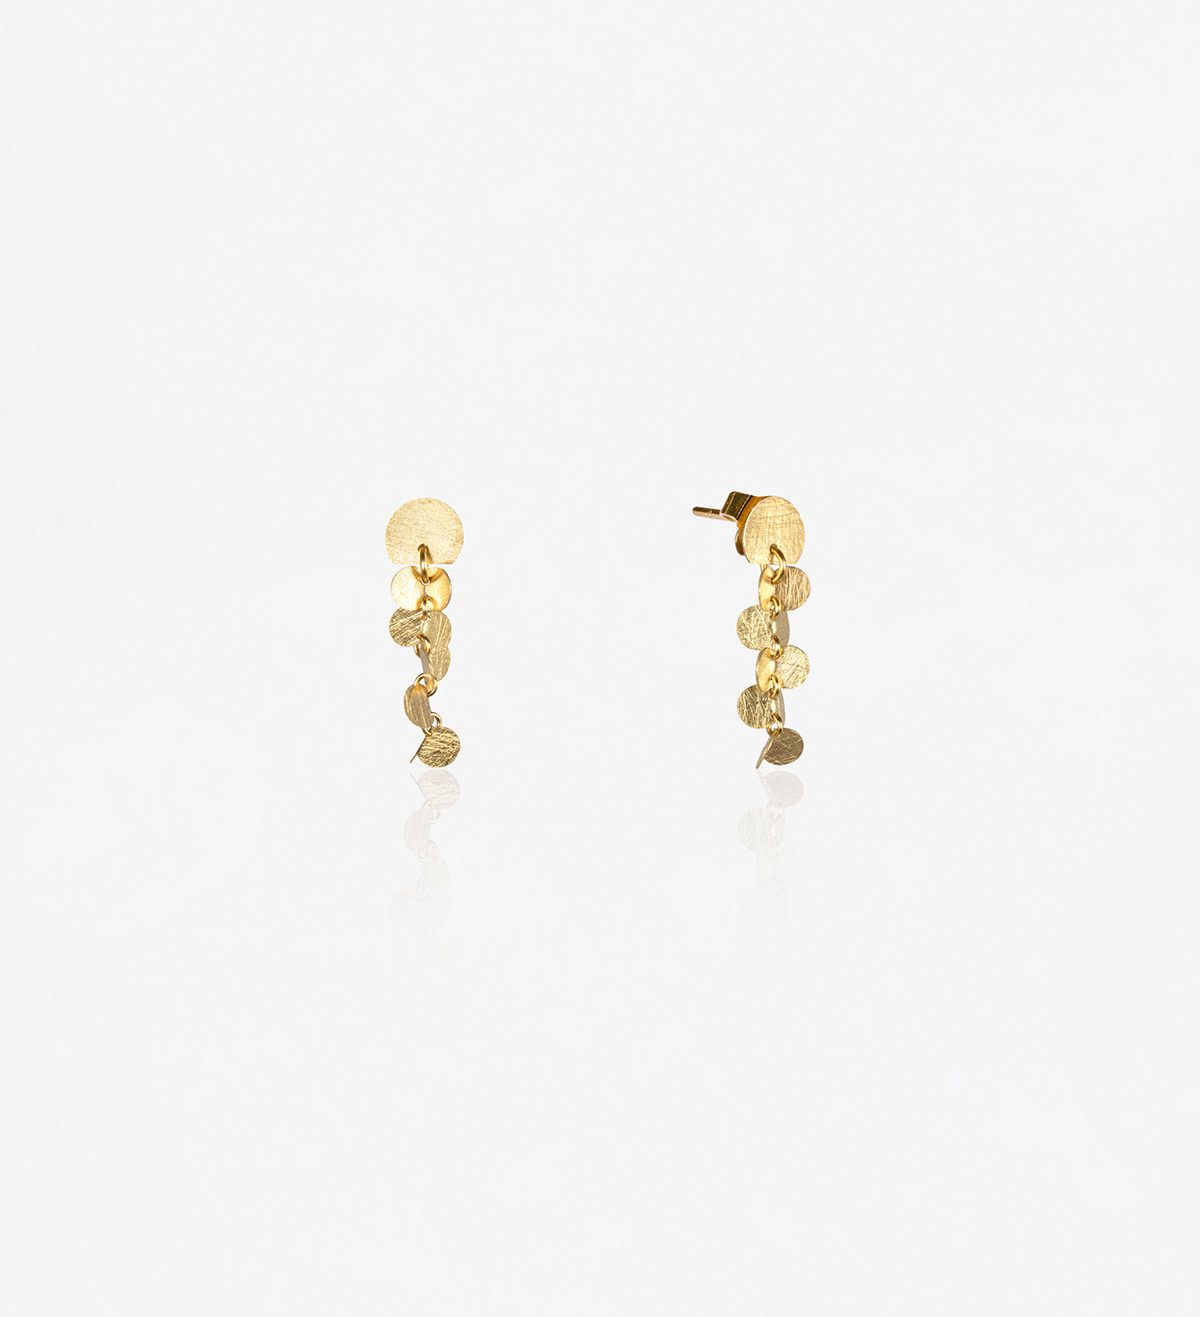 18k gold earrings Papallones 30mm